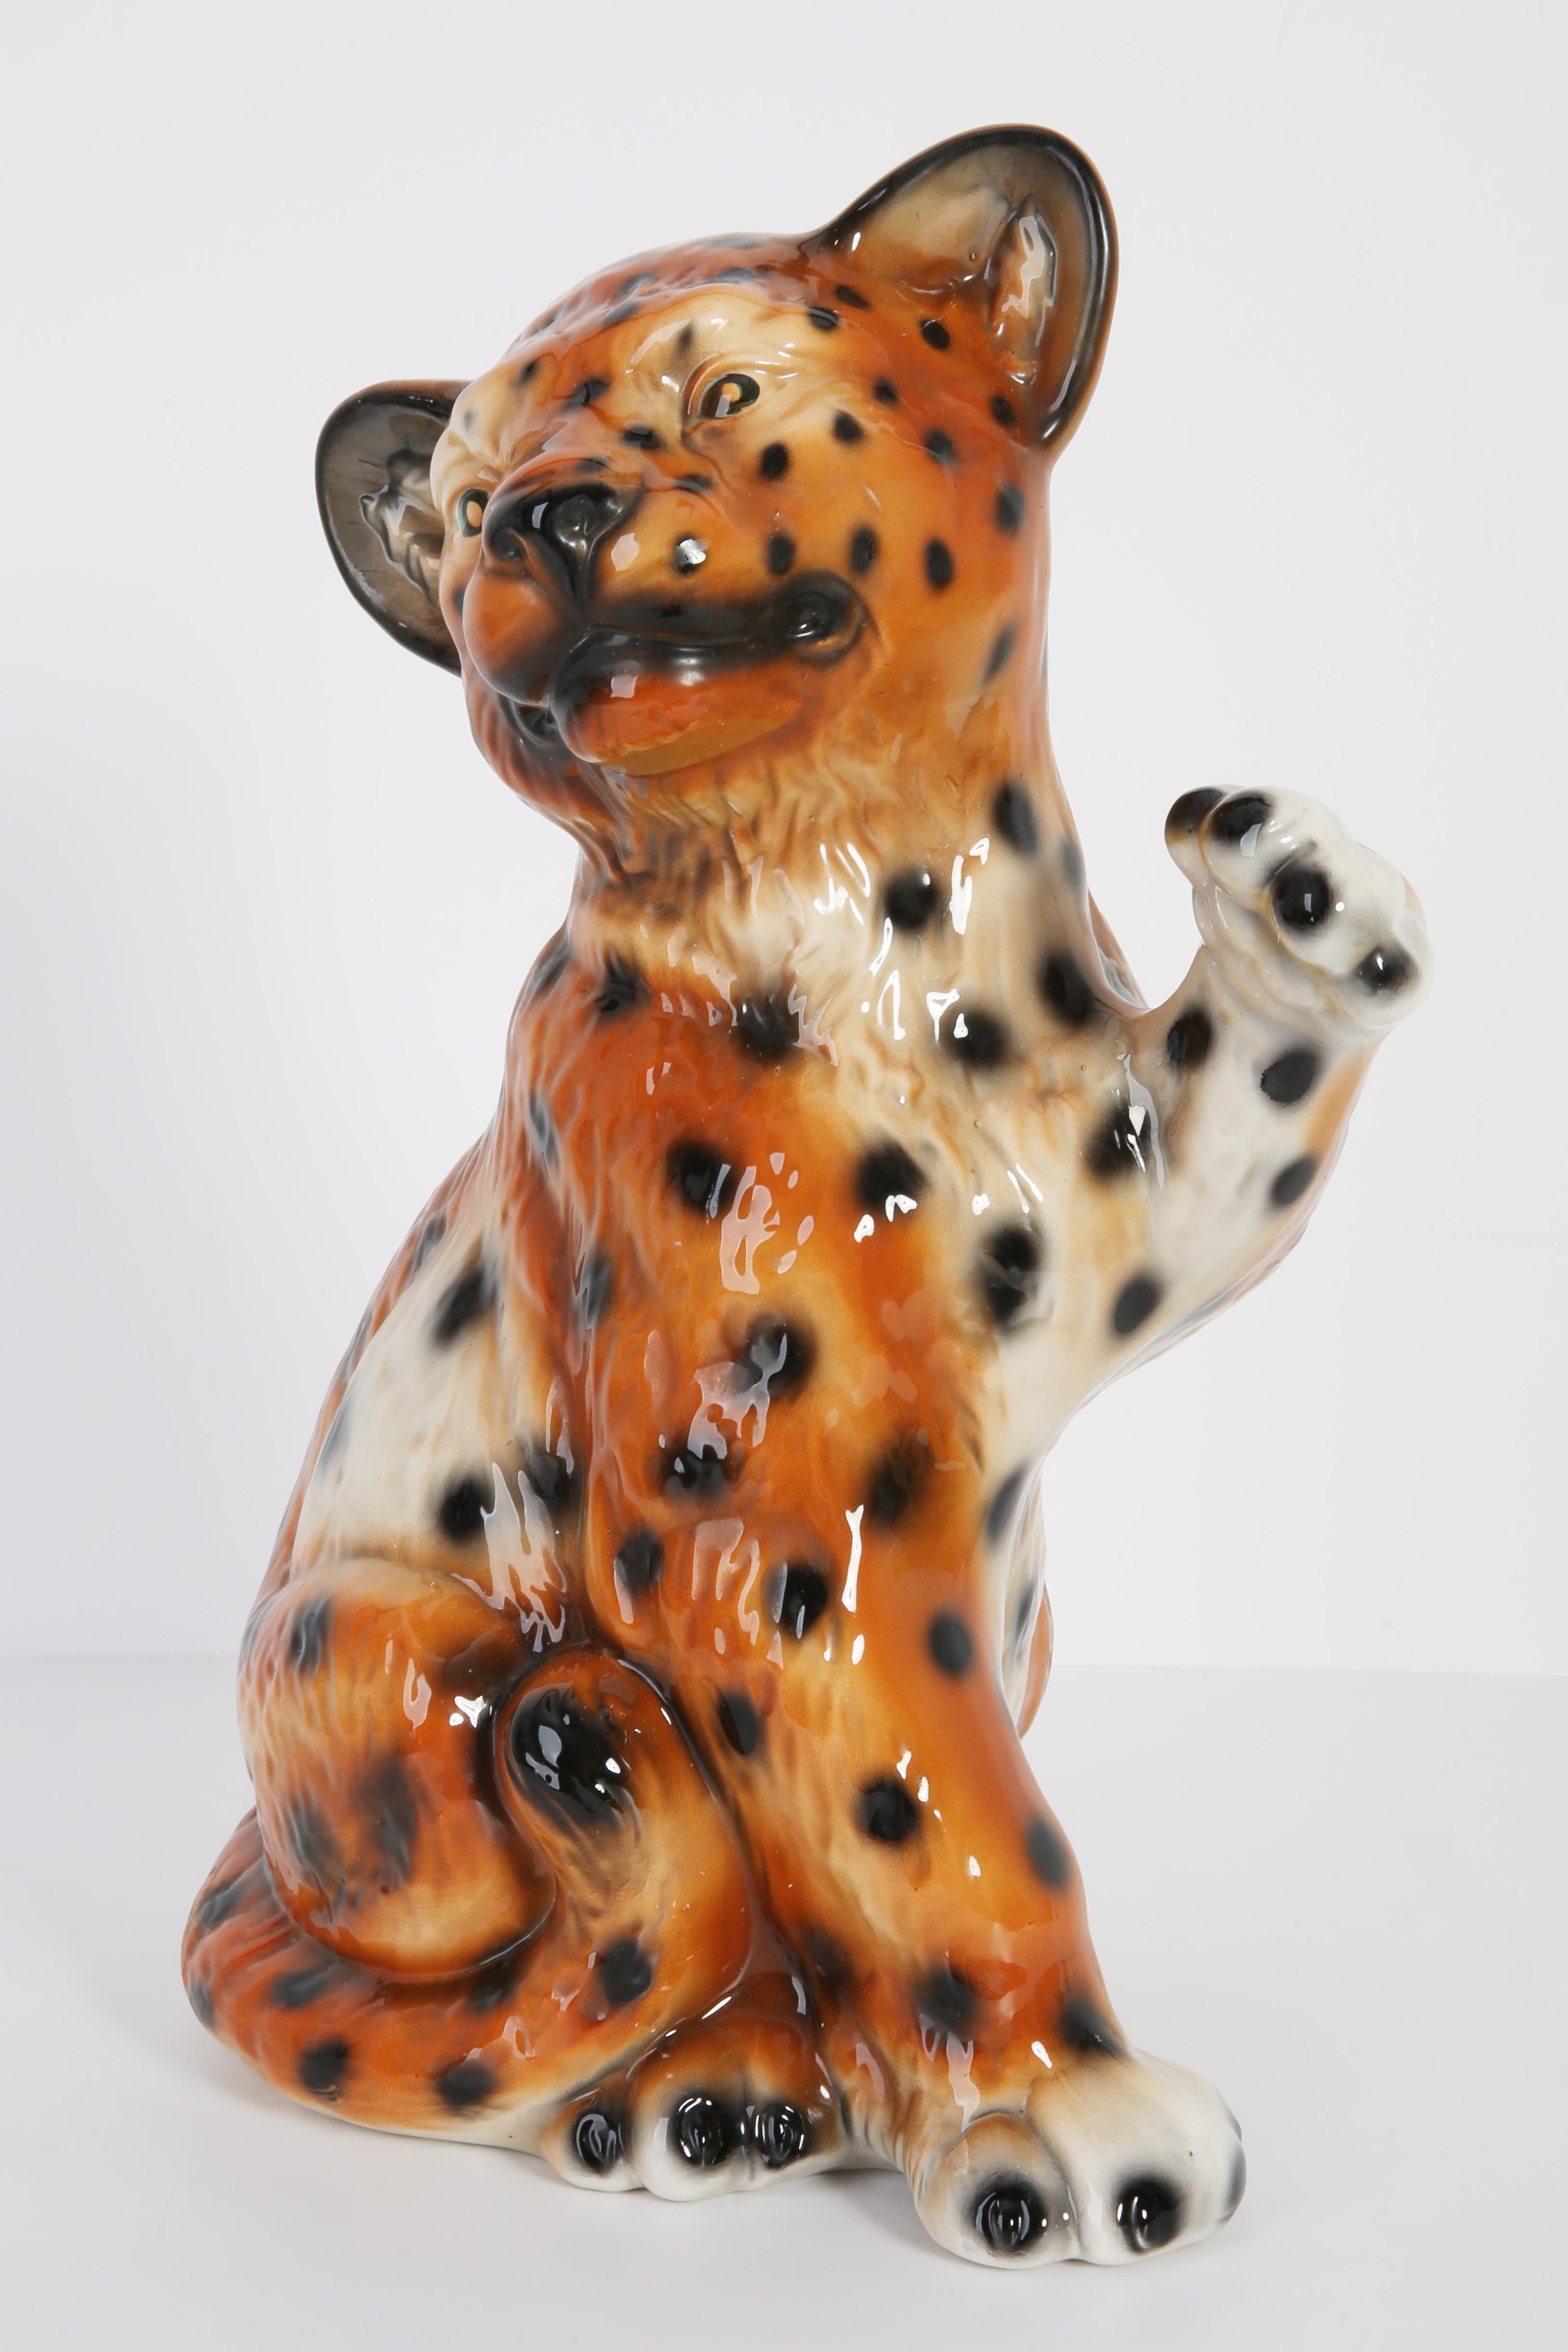 Italienische Keramik, Unterschriften, sehr guter originaler sehr guter Vintage-Zustand. Keine Schäden. Leopard wurde in den 1960er Jahren in Italien hergestellt.